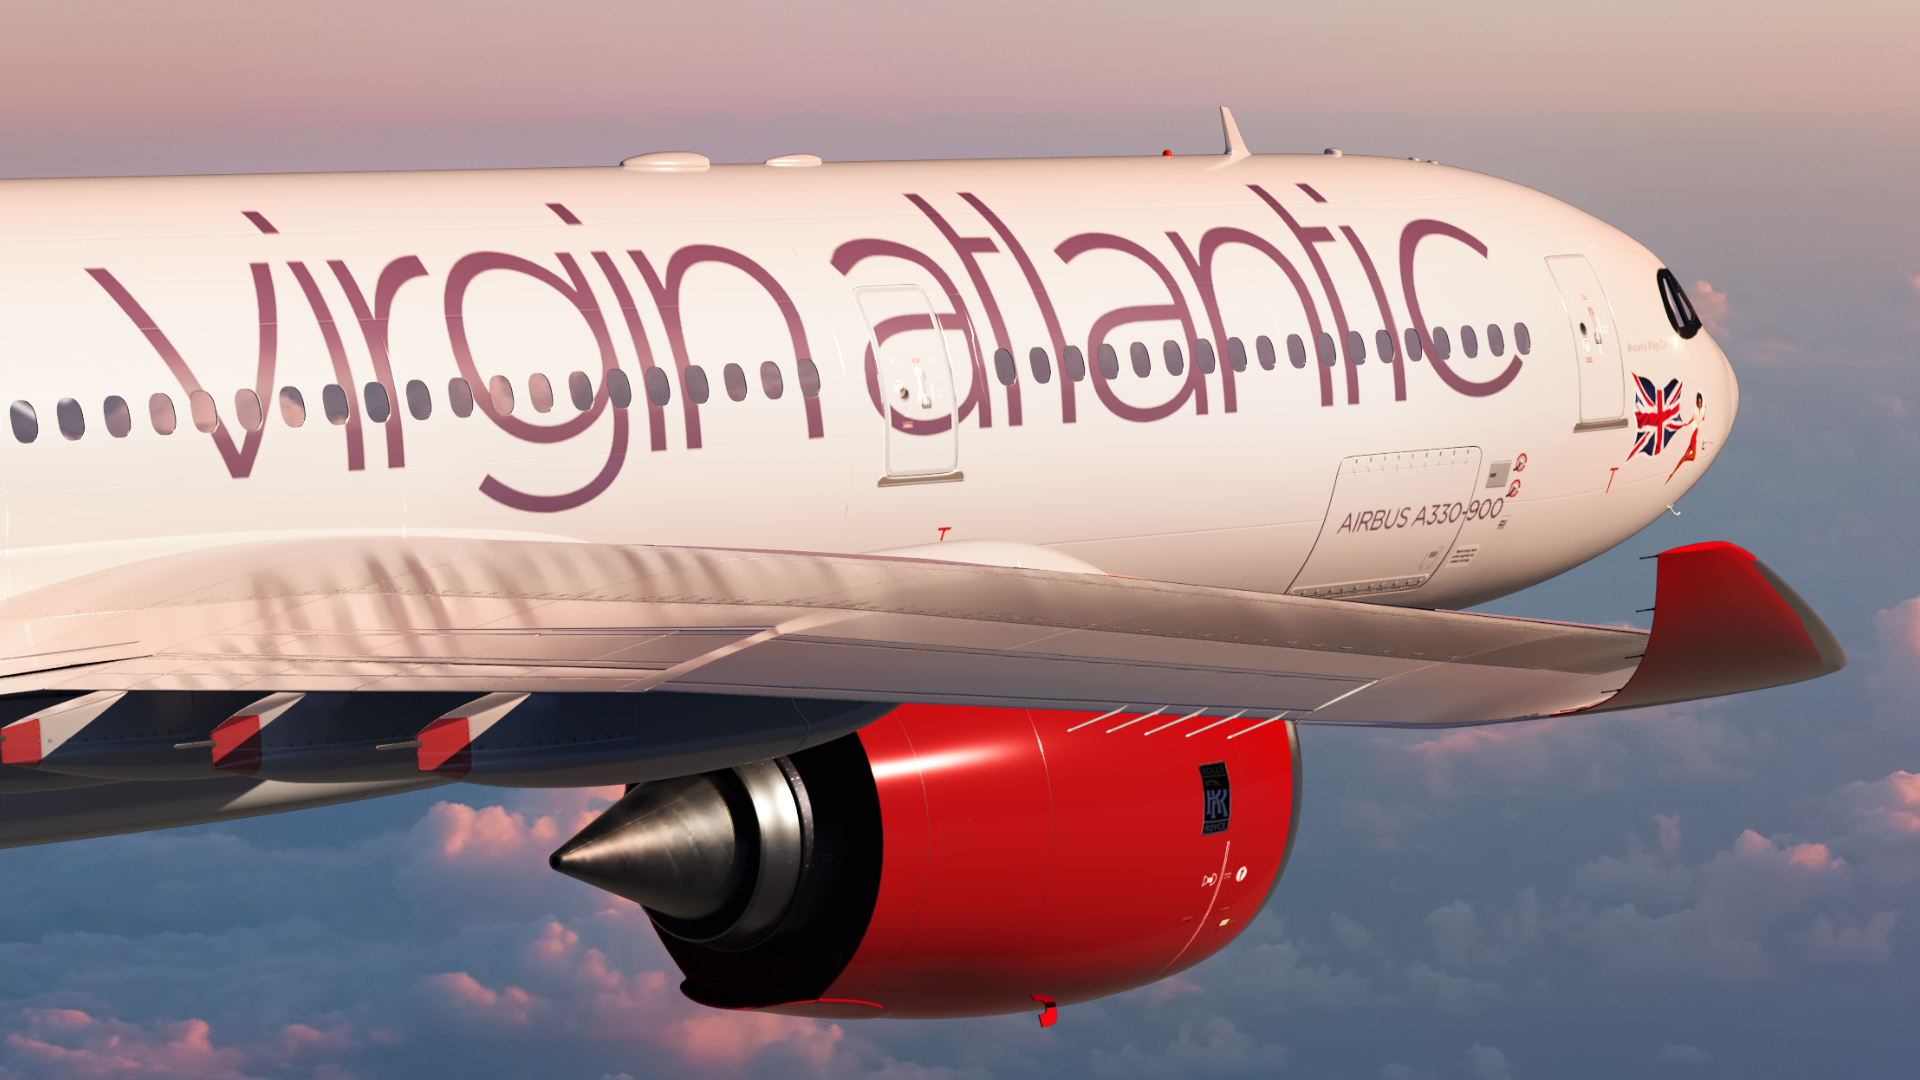 Sabena-teknikker skal sørge for basevedlikehold i Bordeaux for Virgin Atlantic A330neo-fly